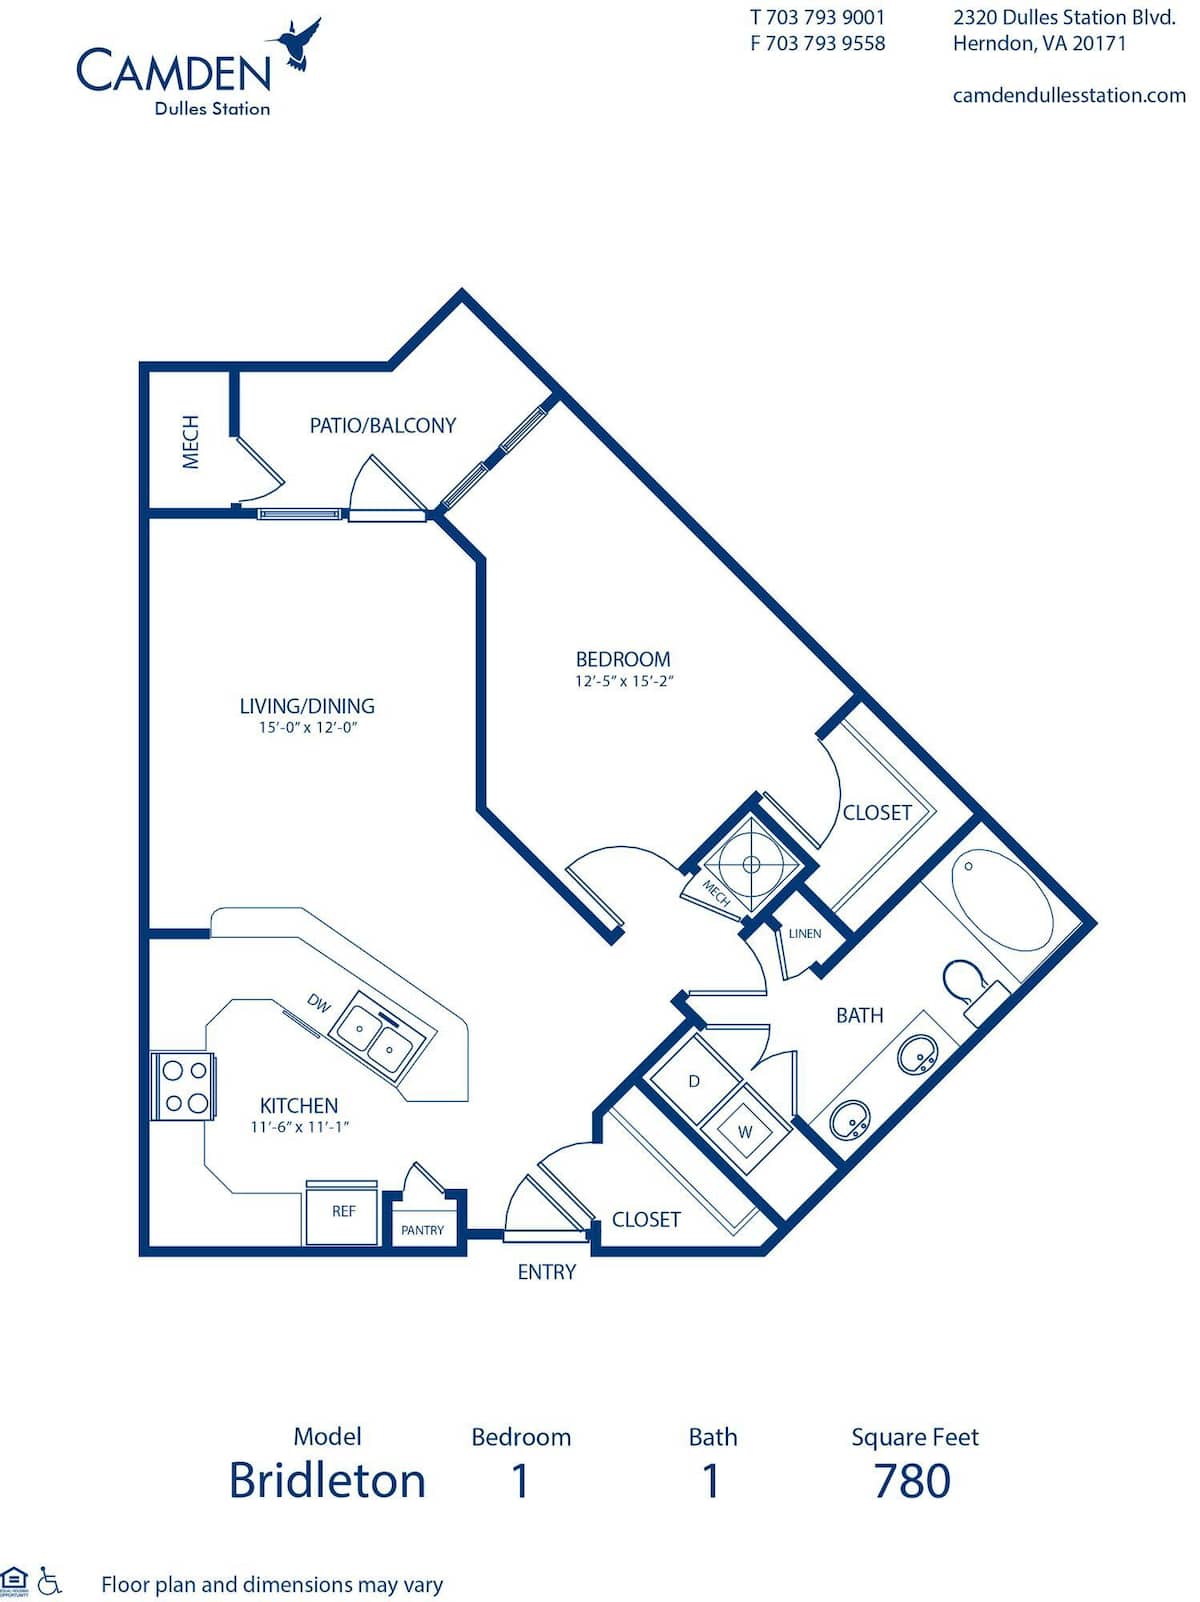 Floorplan diagram for Bridleton, showing 1 bedroom